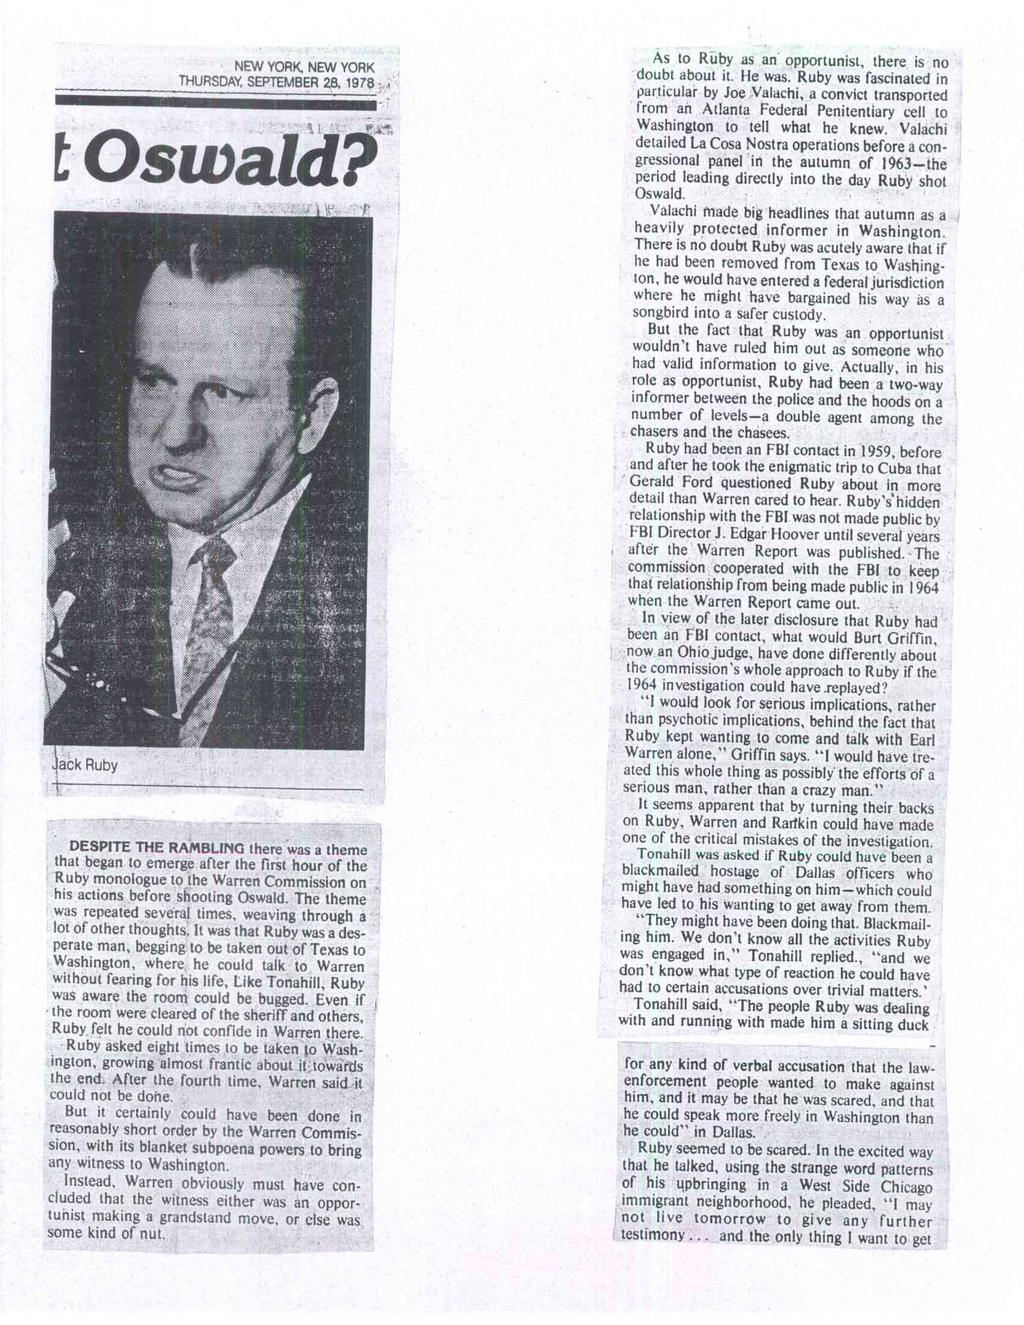 NEW YORK NEW YORK THURSDAY, SEPTEMBER 28. 1978 t Oswald?